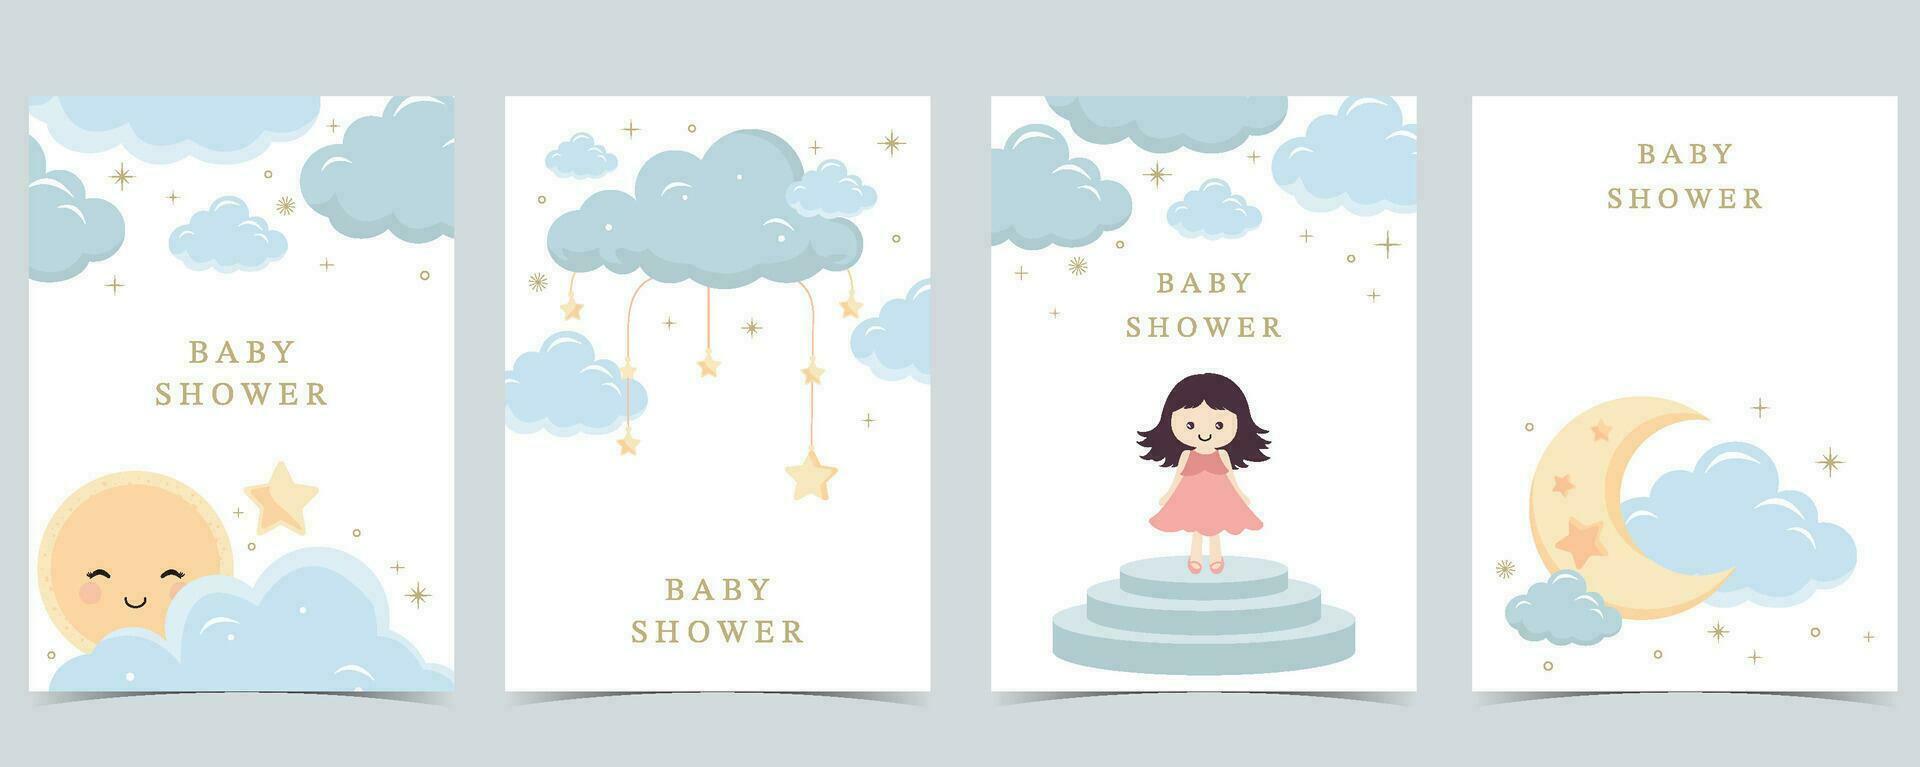 Baby Dusche Einladung Karte zum Junge mit Ballon, Wolke, Himmel, Blau vektor